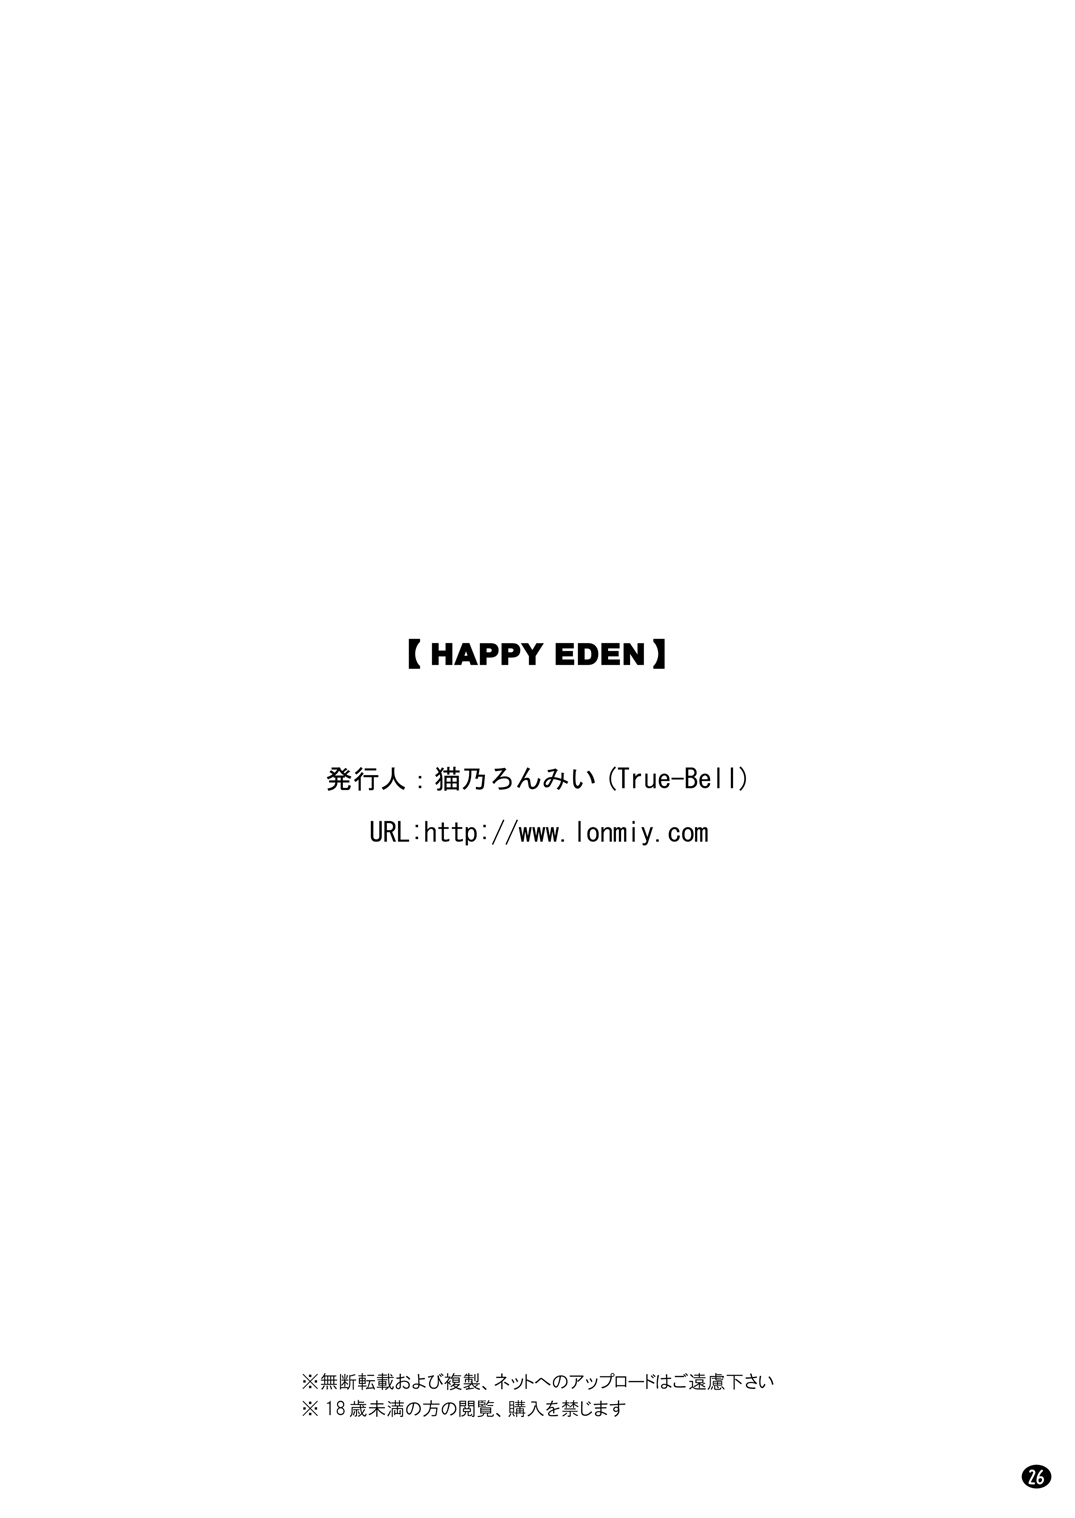 [True-Bell (猫乃ろんみい)] HAPPY EDEN (ファイナルファンタジーXI)